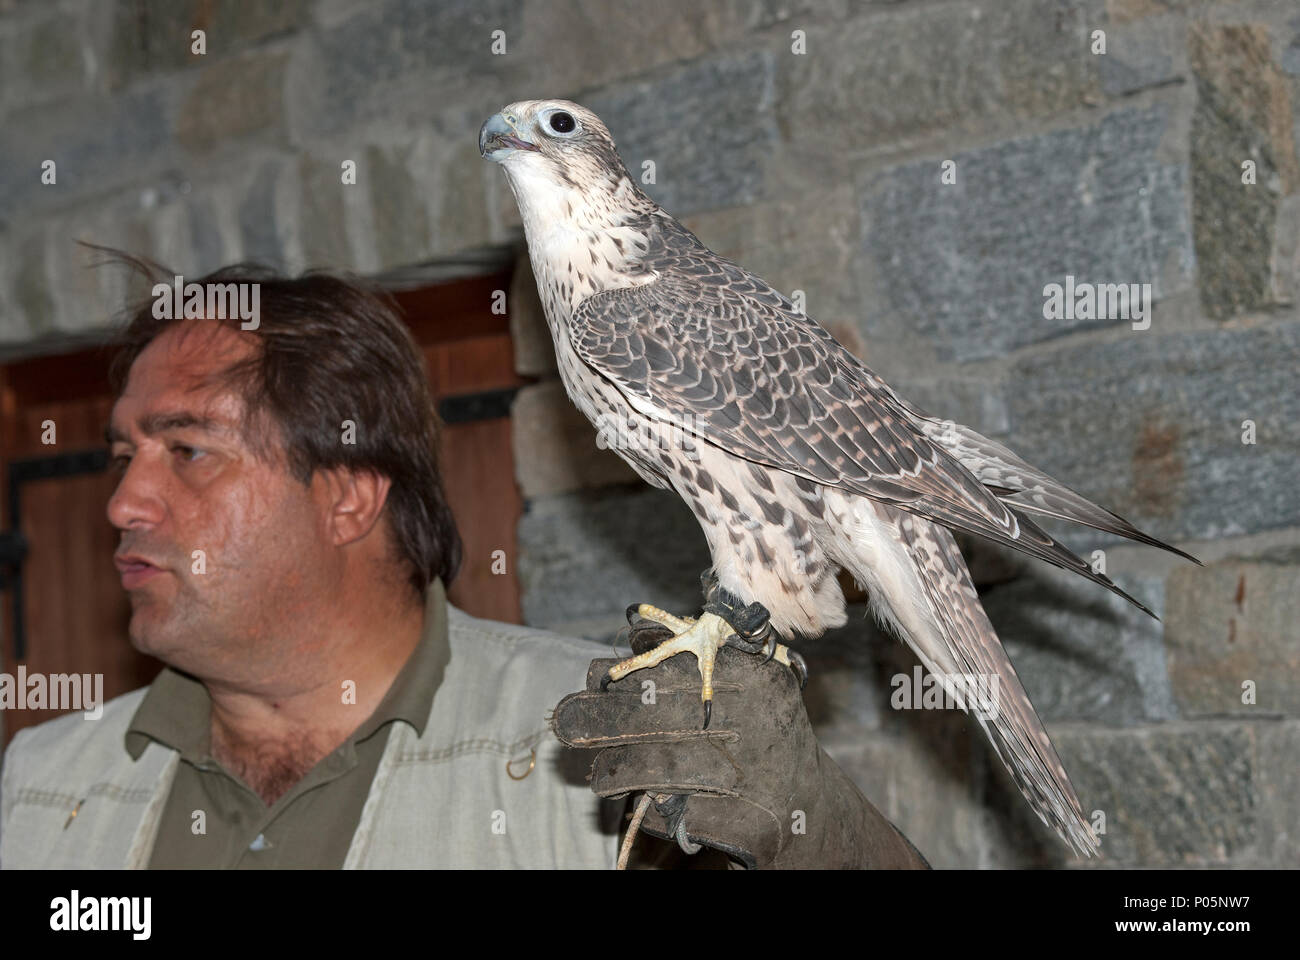 The biologist Bernardo Pedroni shows a Lanner Falcon (Falco biarmicus) to visitors, Osservatorio Eco-Faunistico Alpino, Aprica, Lombardy, Italy Stock Photo